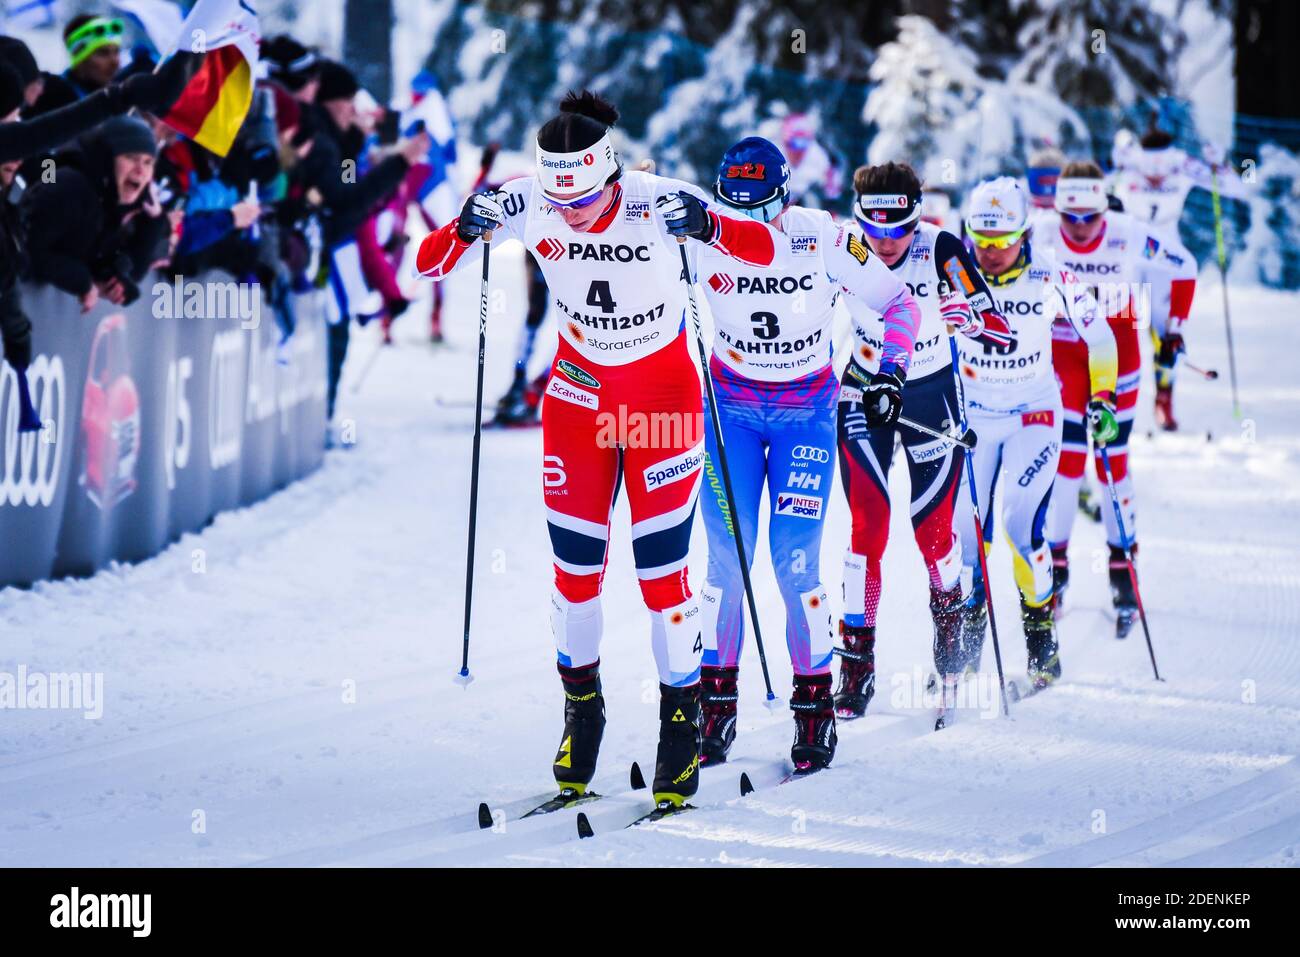 Marit Bjørgen (Bjorgen, Bjoergen), la squadra norvegese di sci femminile, partecipa in skiathlon ai Campionati mondiali di sci nordico FIS 2017 a Lahti, Finlandia. Foto Stock